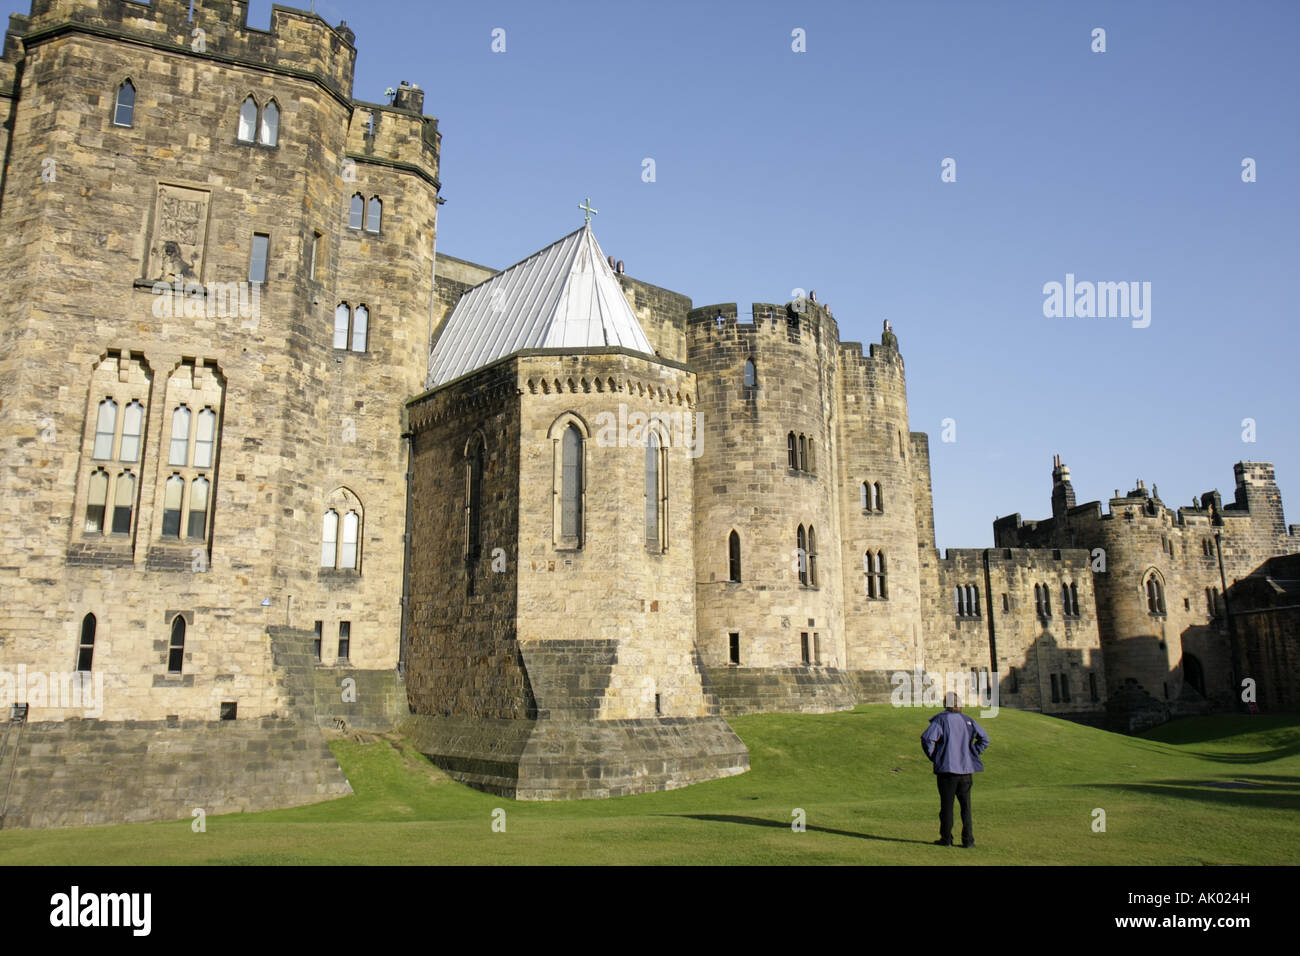 Vereinigtes Königreich England Northumberland, Alnwick, Alnwick Castle, 11. Jahrhundert, normannische Architektur, Harry Potter-Film-Website, UK071002084 Stockfoto